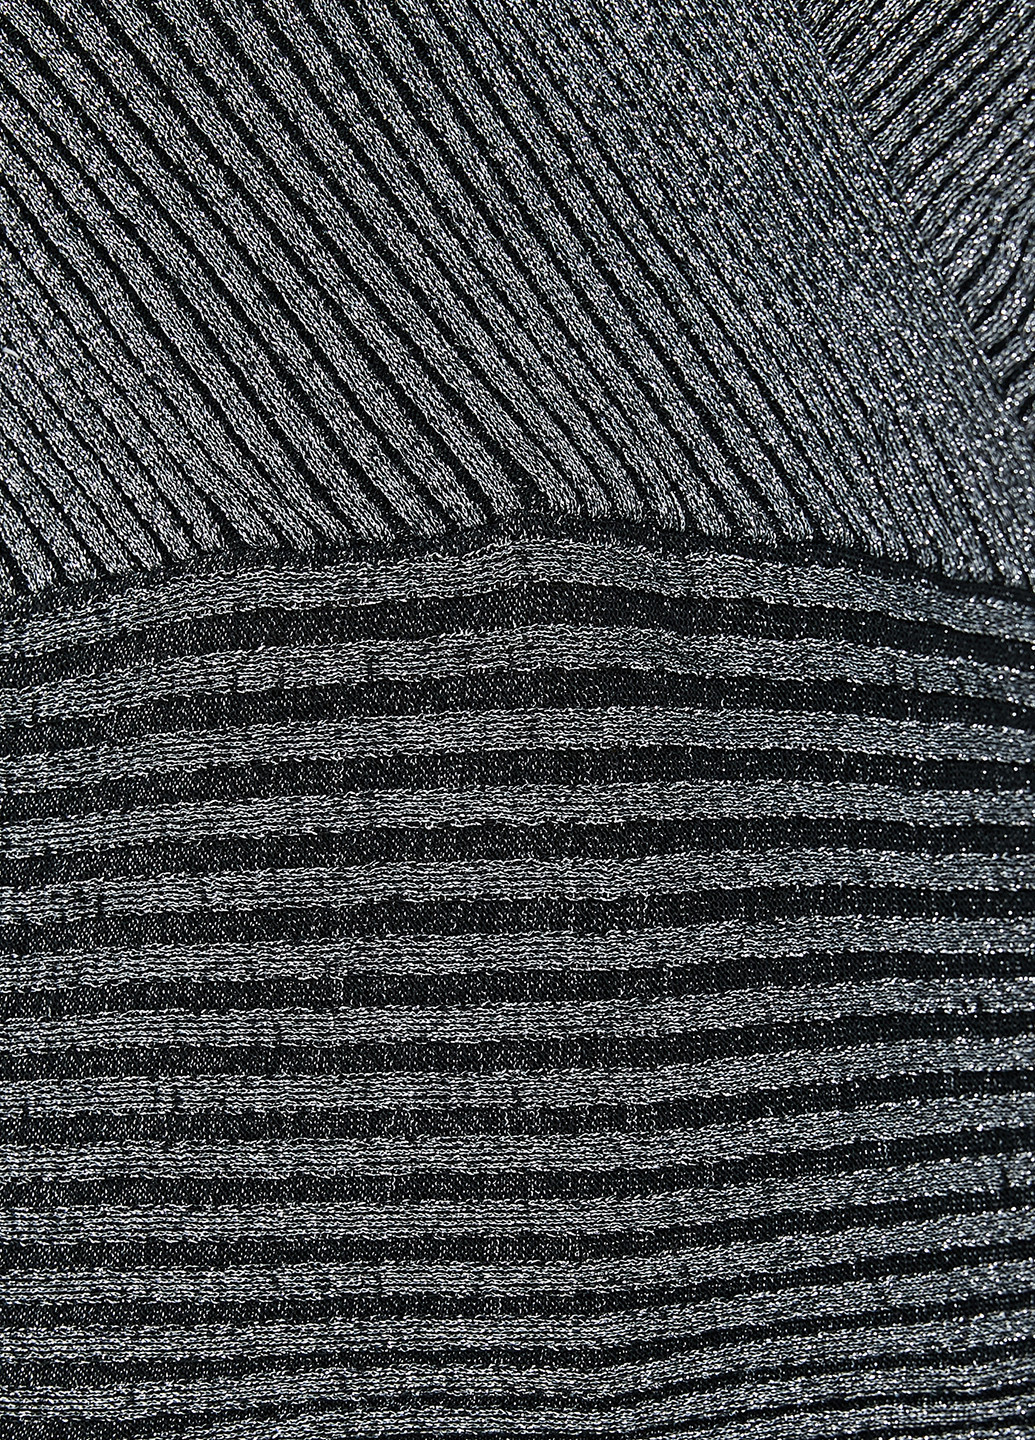 Графітовий демісезонний пуловер пуловер KOTON